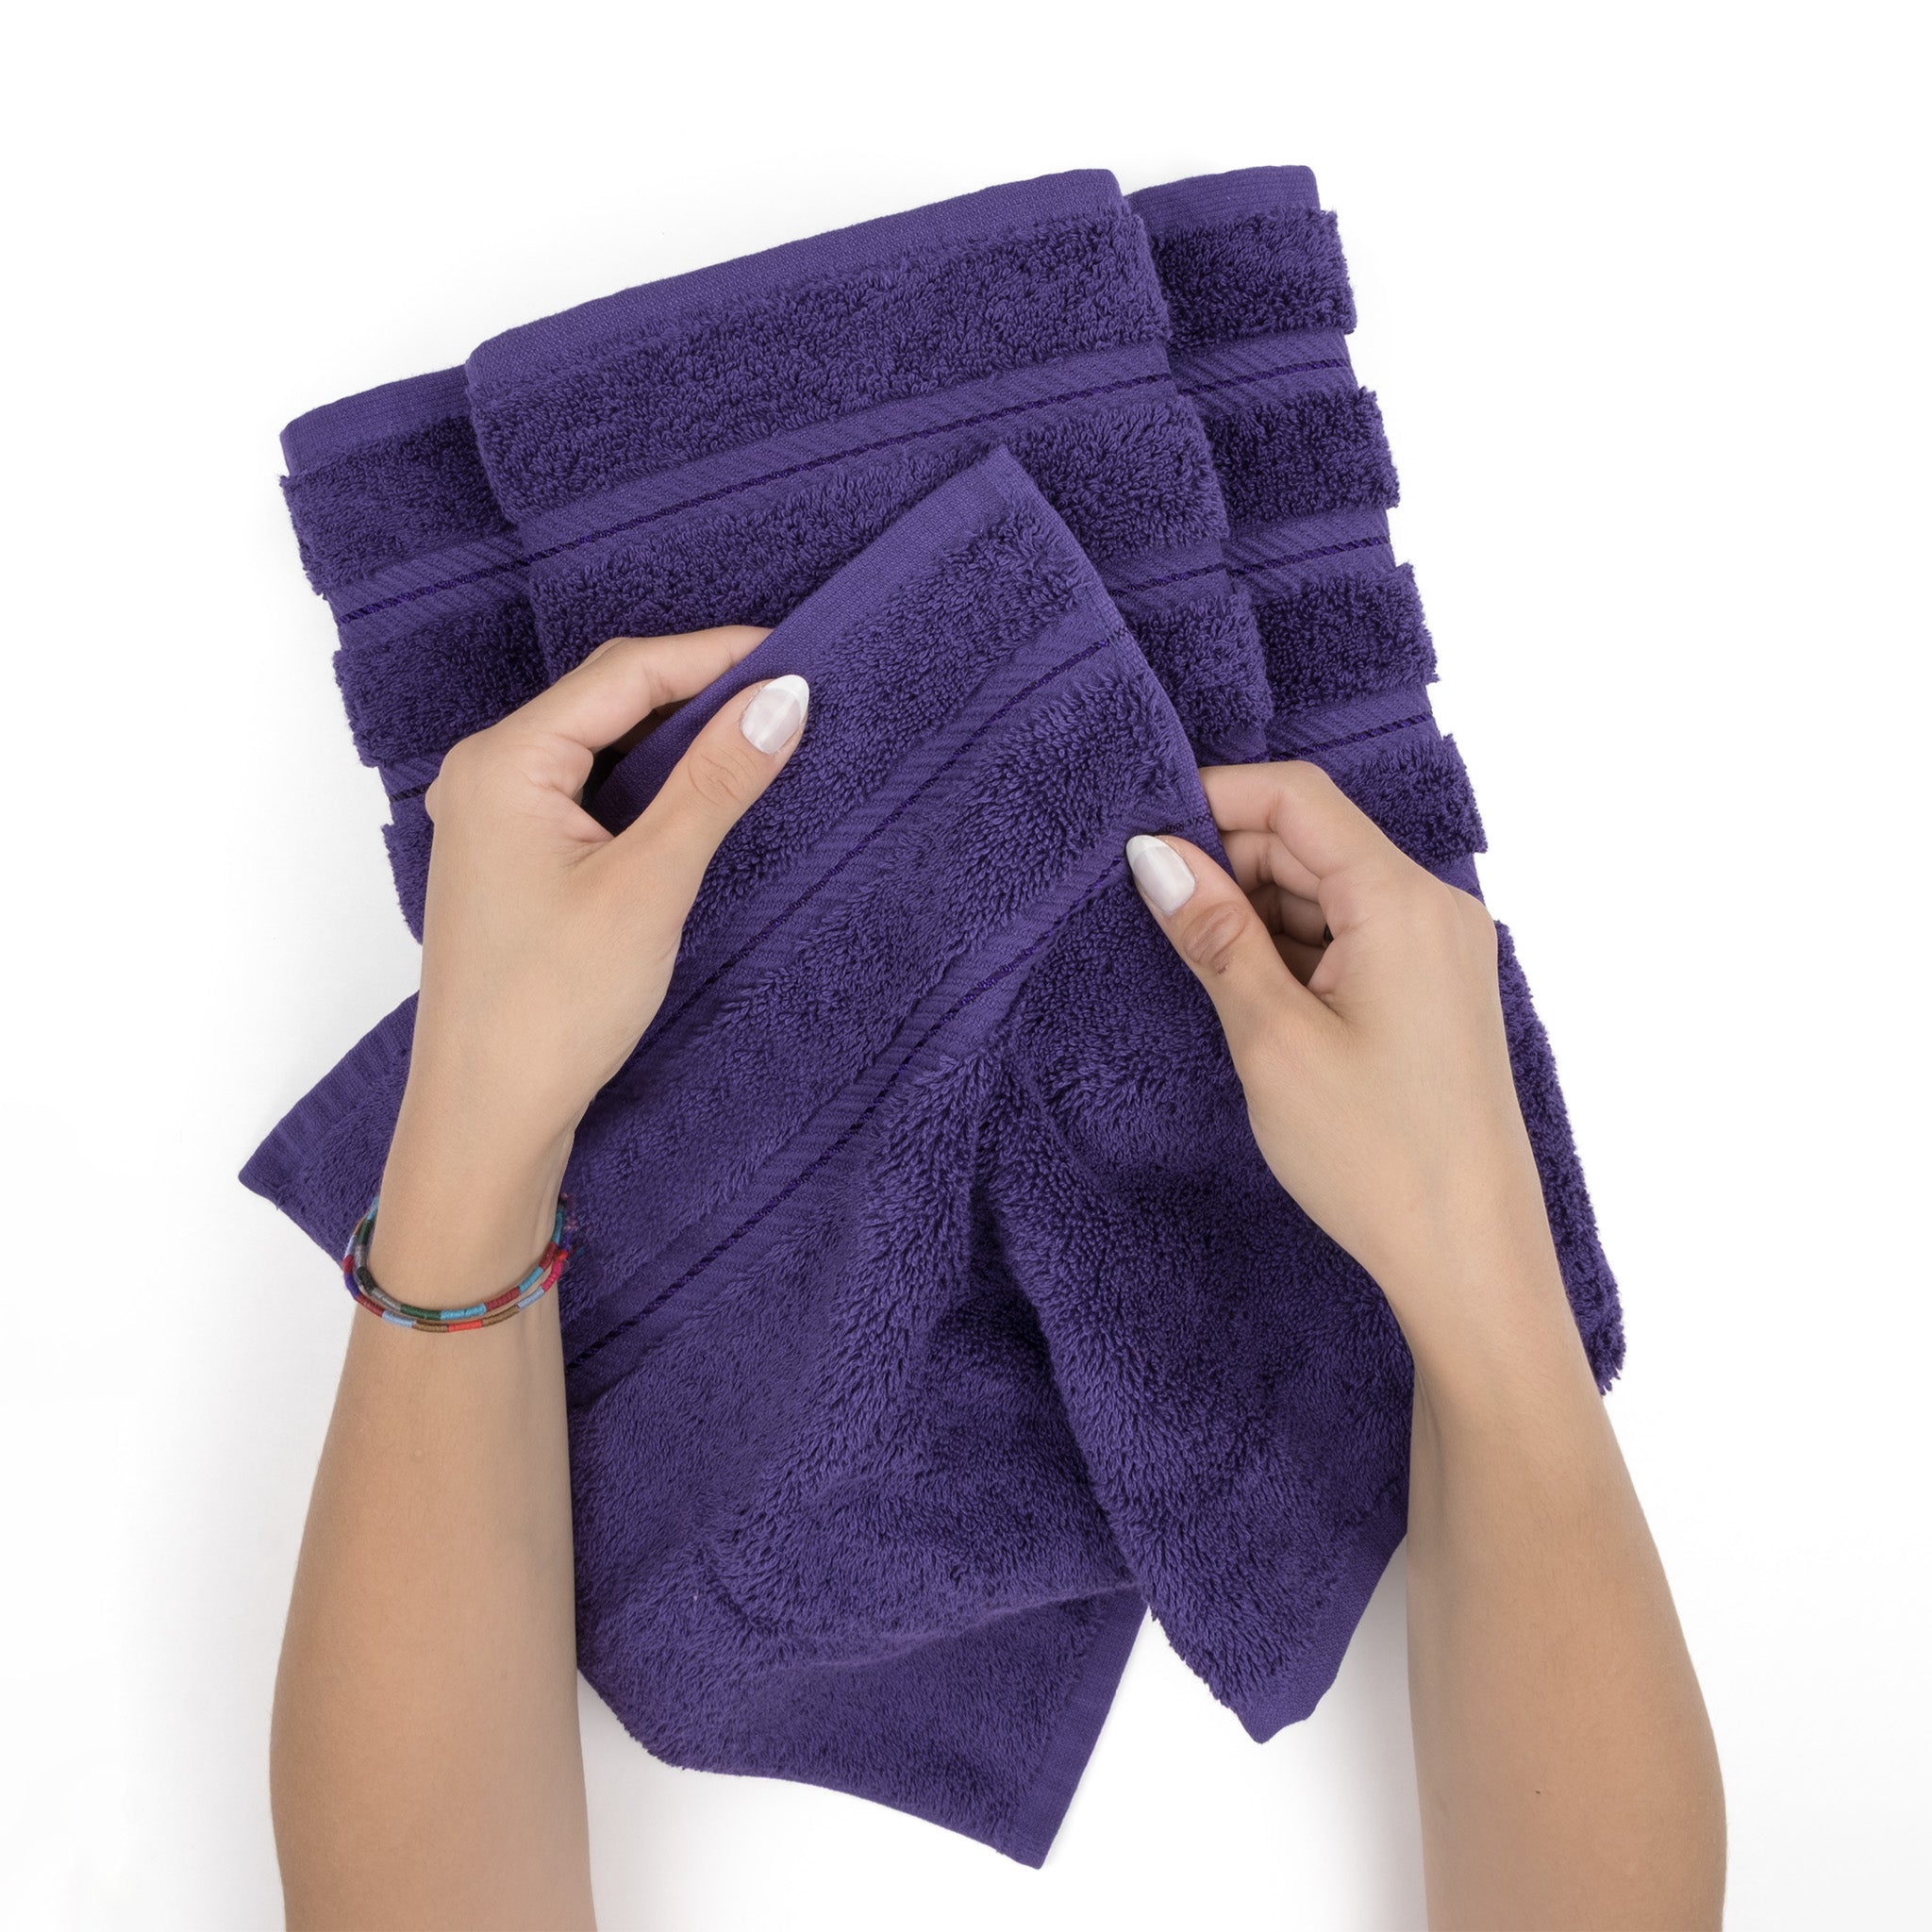 American Soft Linen 100% Turkish Cotton 6 Piece Towel Set Wholesale purple-5